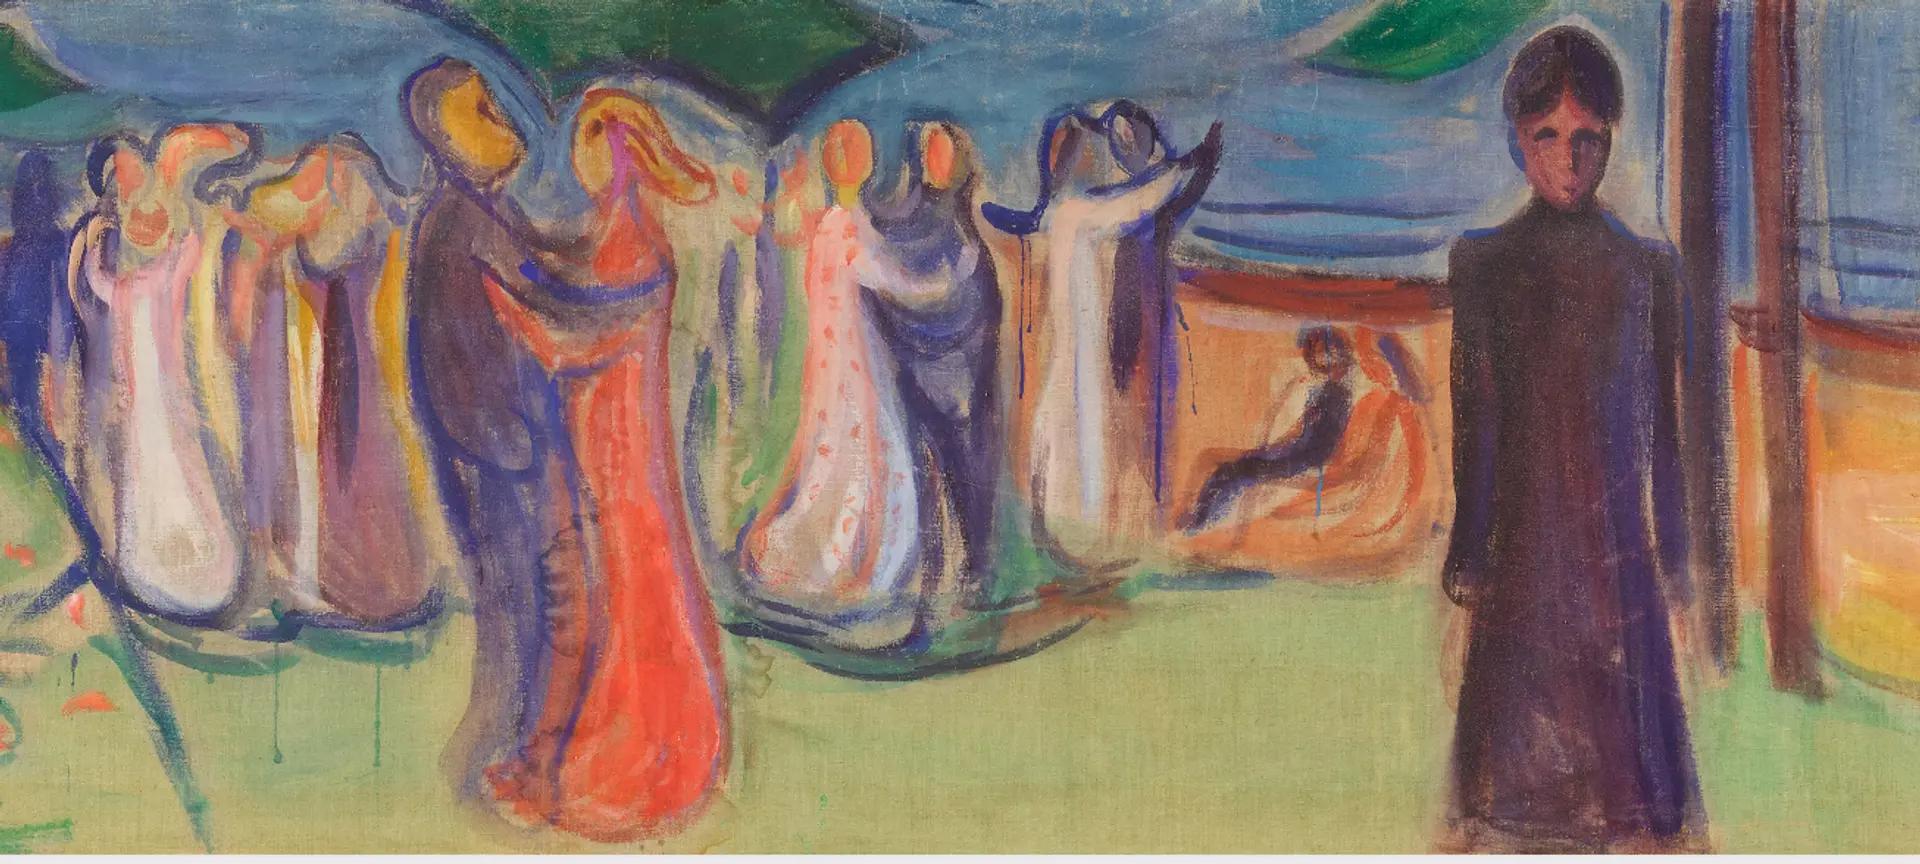 Détail de la partie centrale de Dance on the Beach d'Edvard Munch. Courtesy Sotheby's